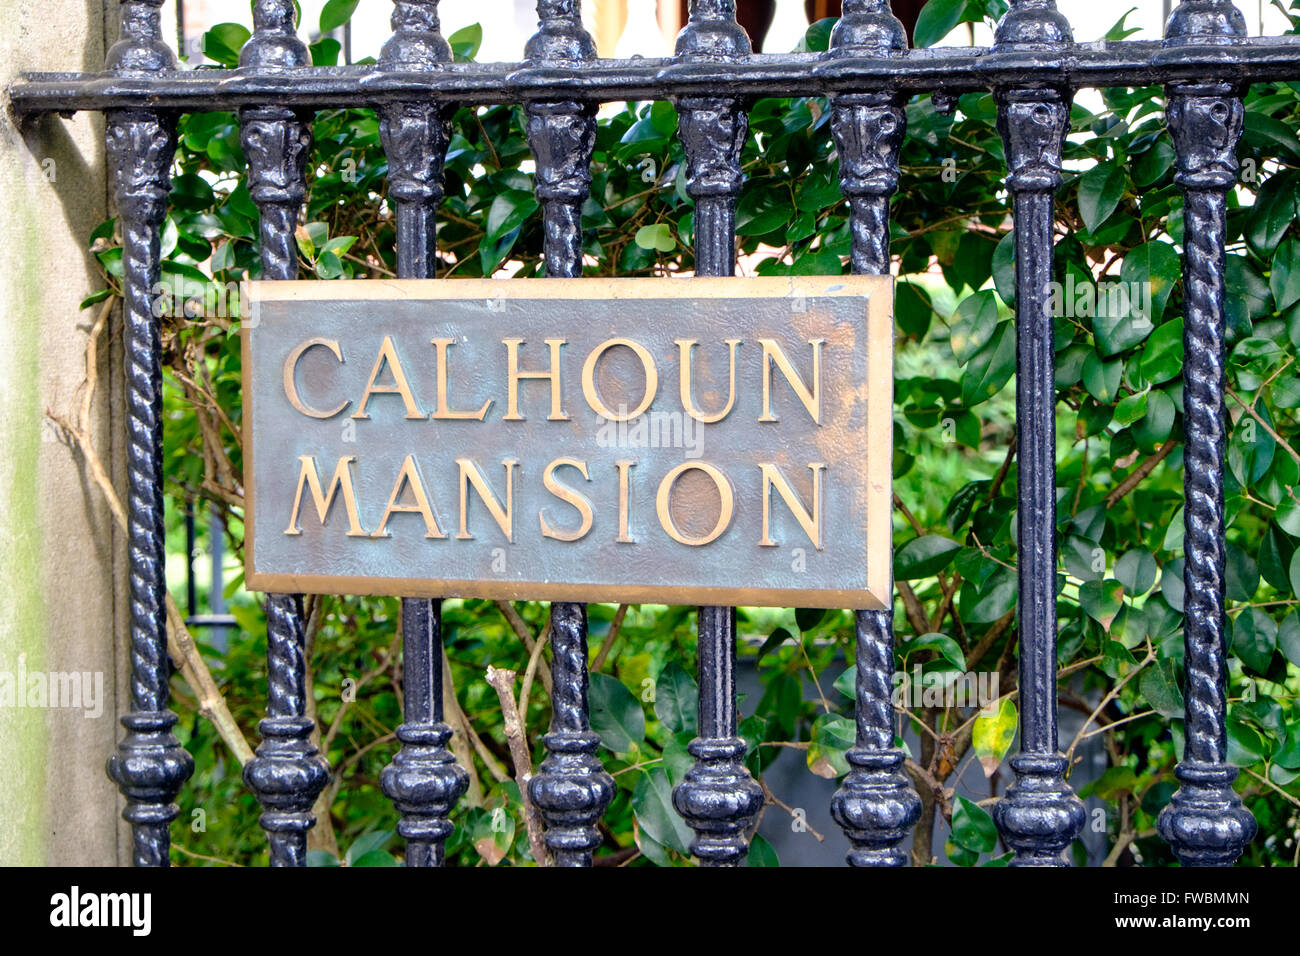 Placa con el nombre de patrón de cuerda ornamentado barandillas de mansión Calhoun, Meeting Street, Charleston, Carolina del Sur, EE.UU. Foto de stock